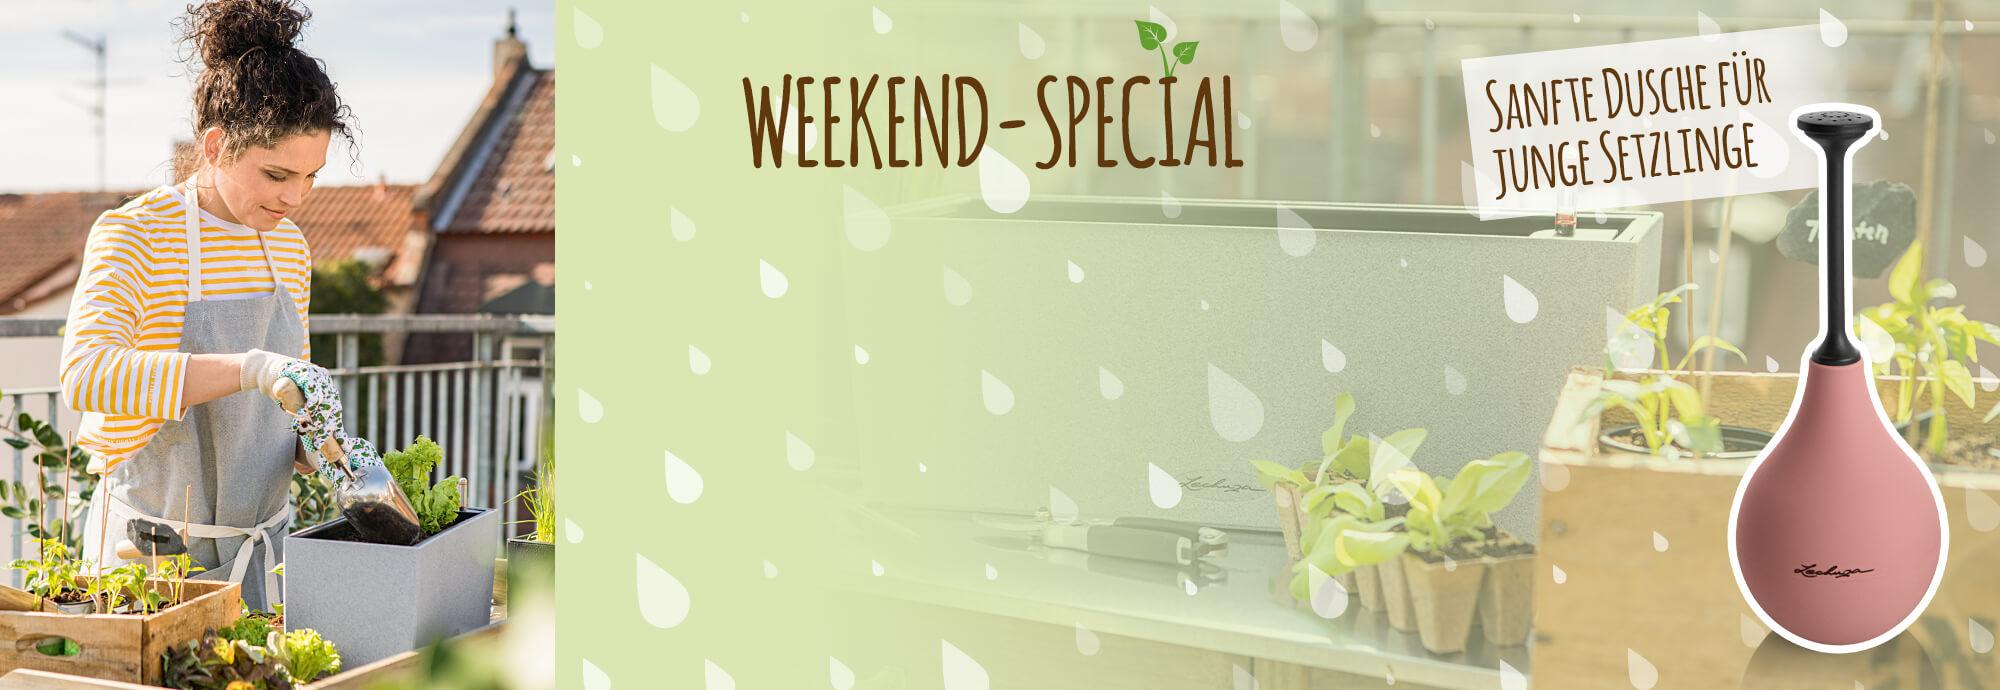 Weekend-Special: Flowershower gratis zu jeder Bestellung ab 65 €